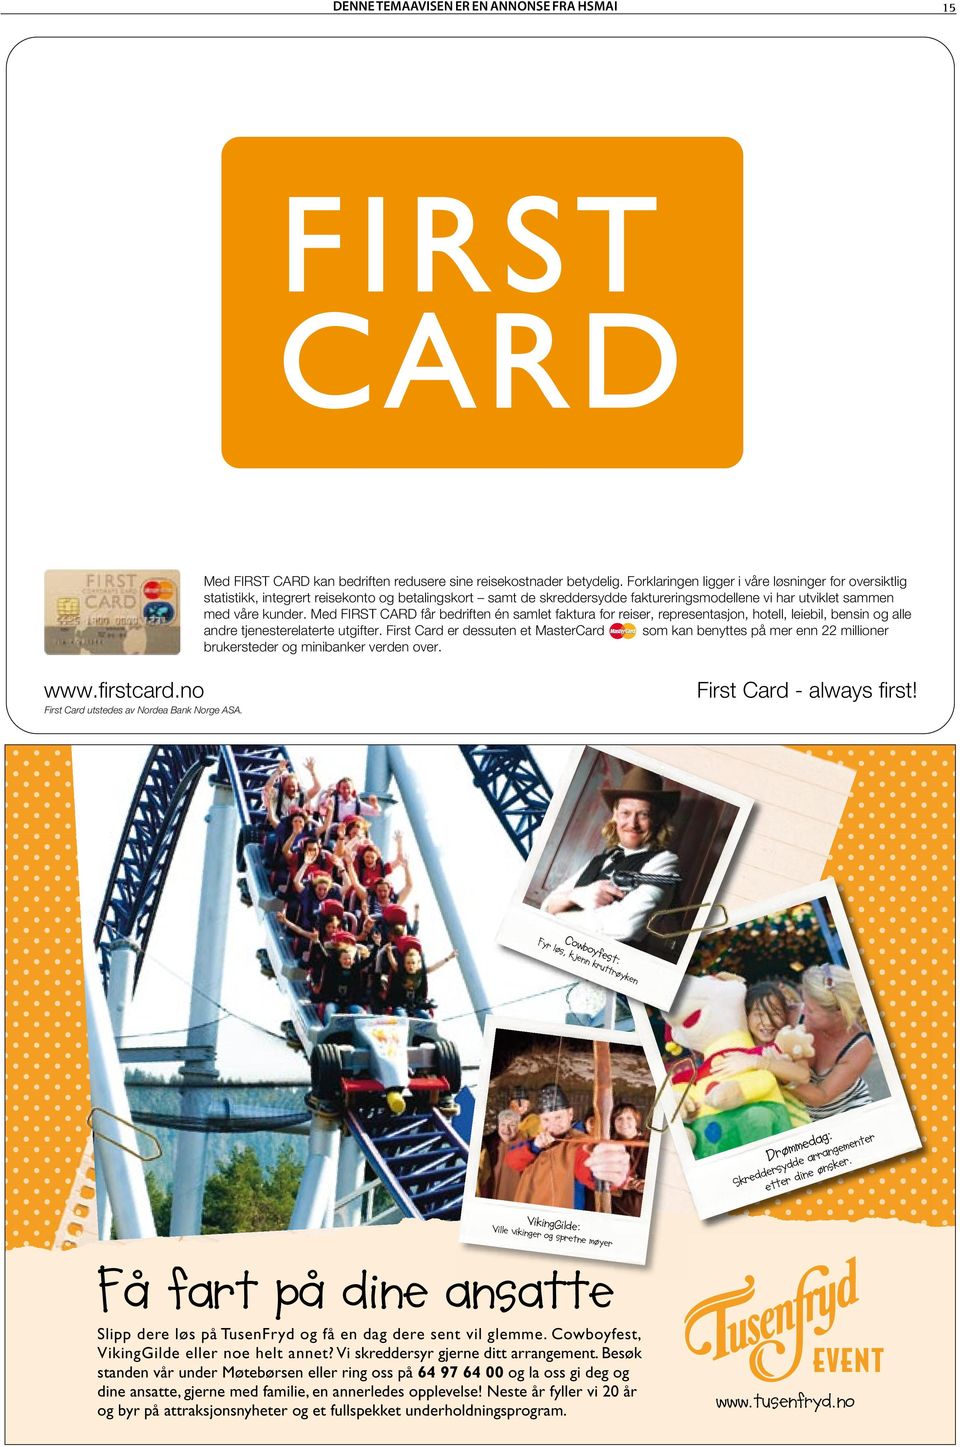 Med FIRST CARD får bedriften én samlet faktura for reiser, representasjon, hotell, leiebil, bensin og alle andre tjenesterelaterte utgifter.